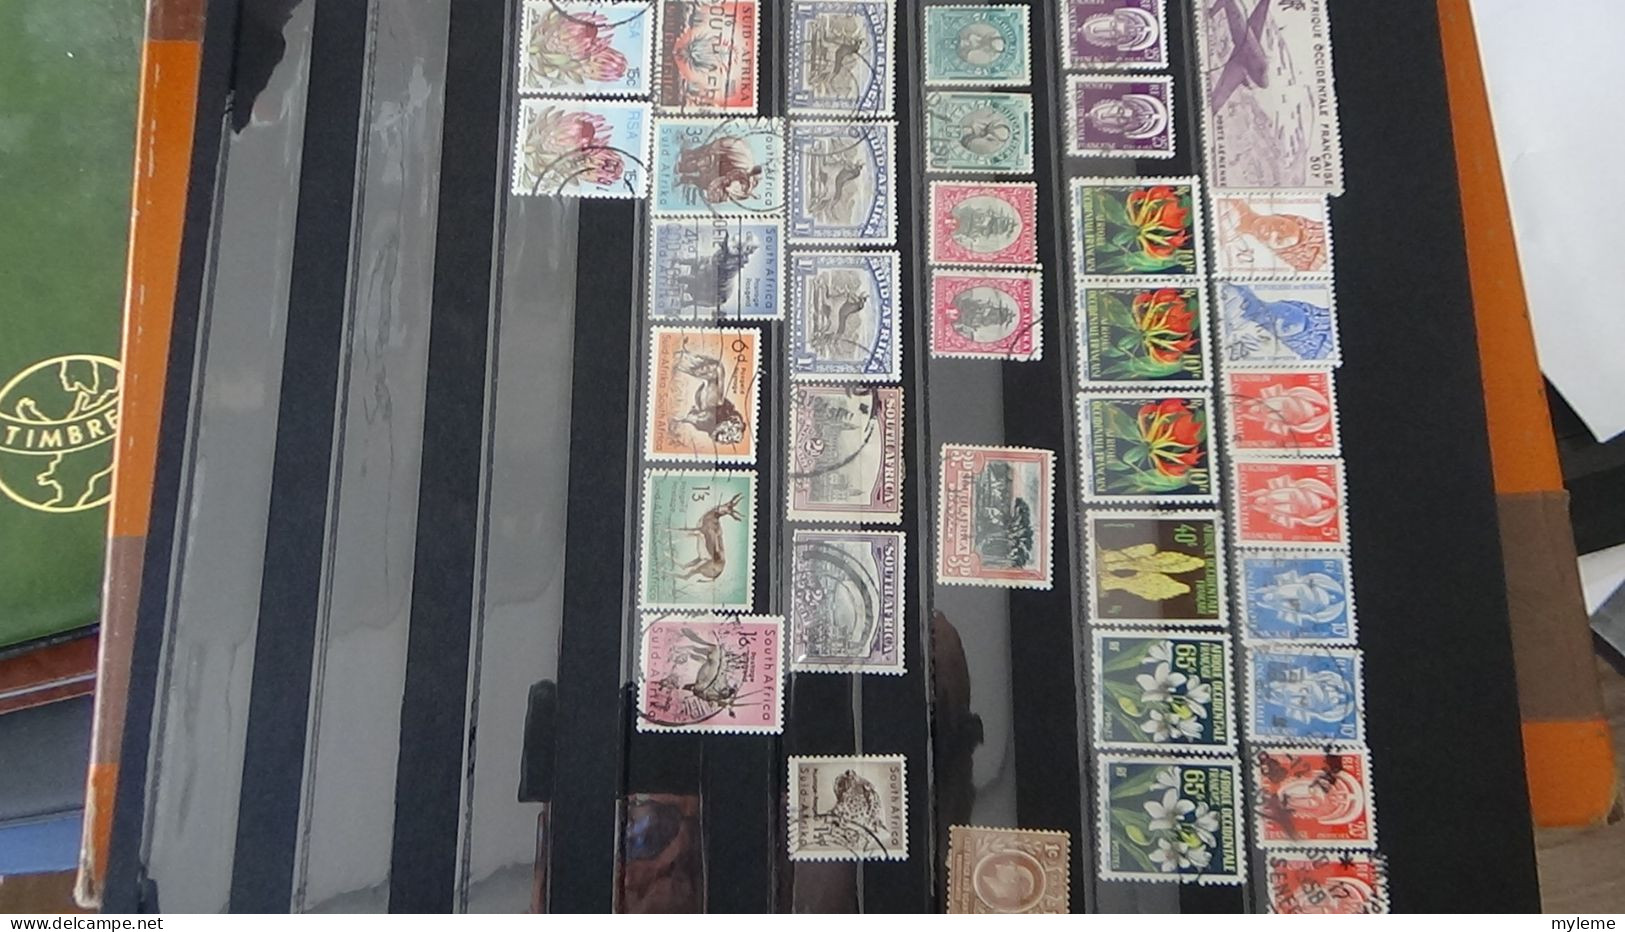 Berlin, belle collection de timbres oblitérés dans un classeur (album)